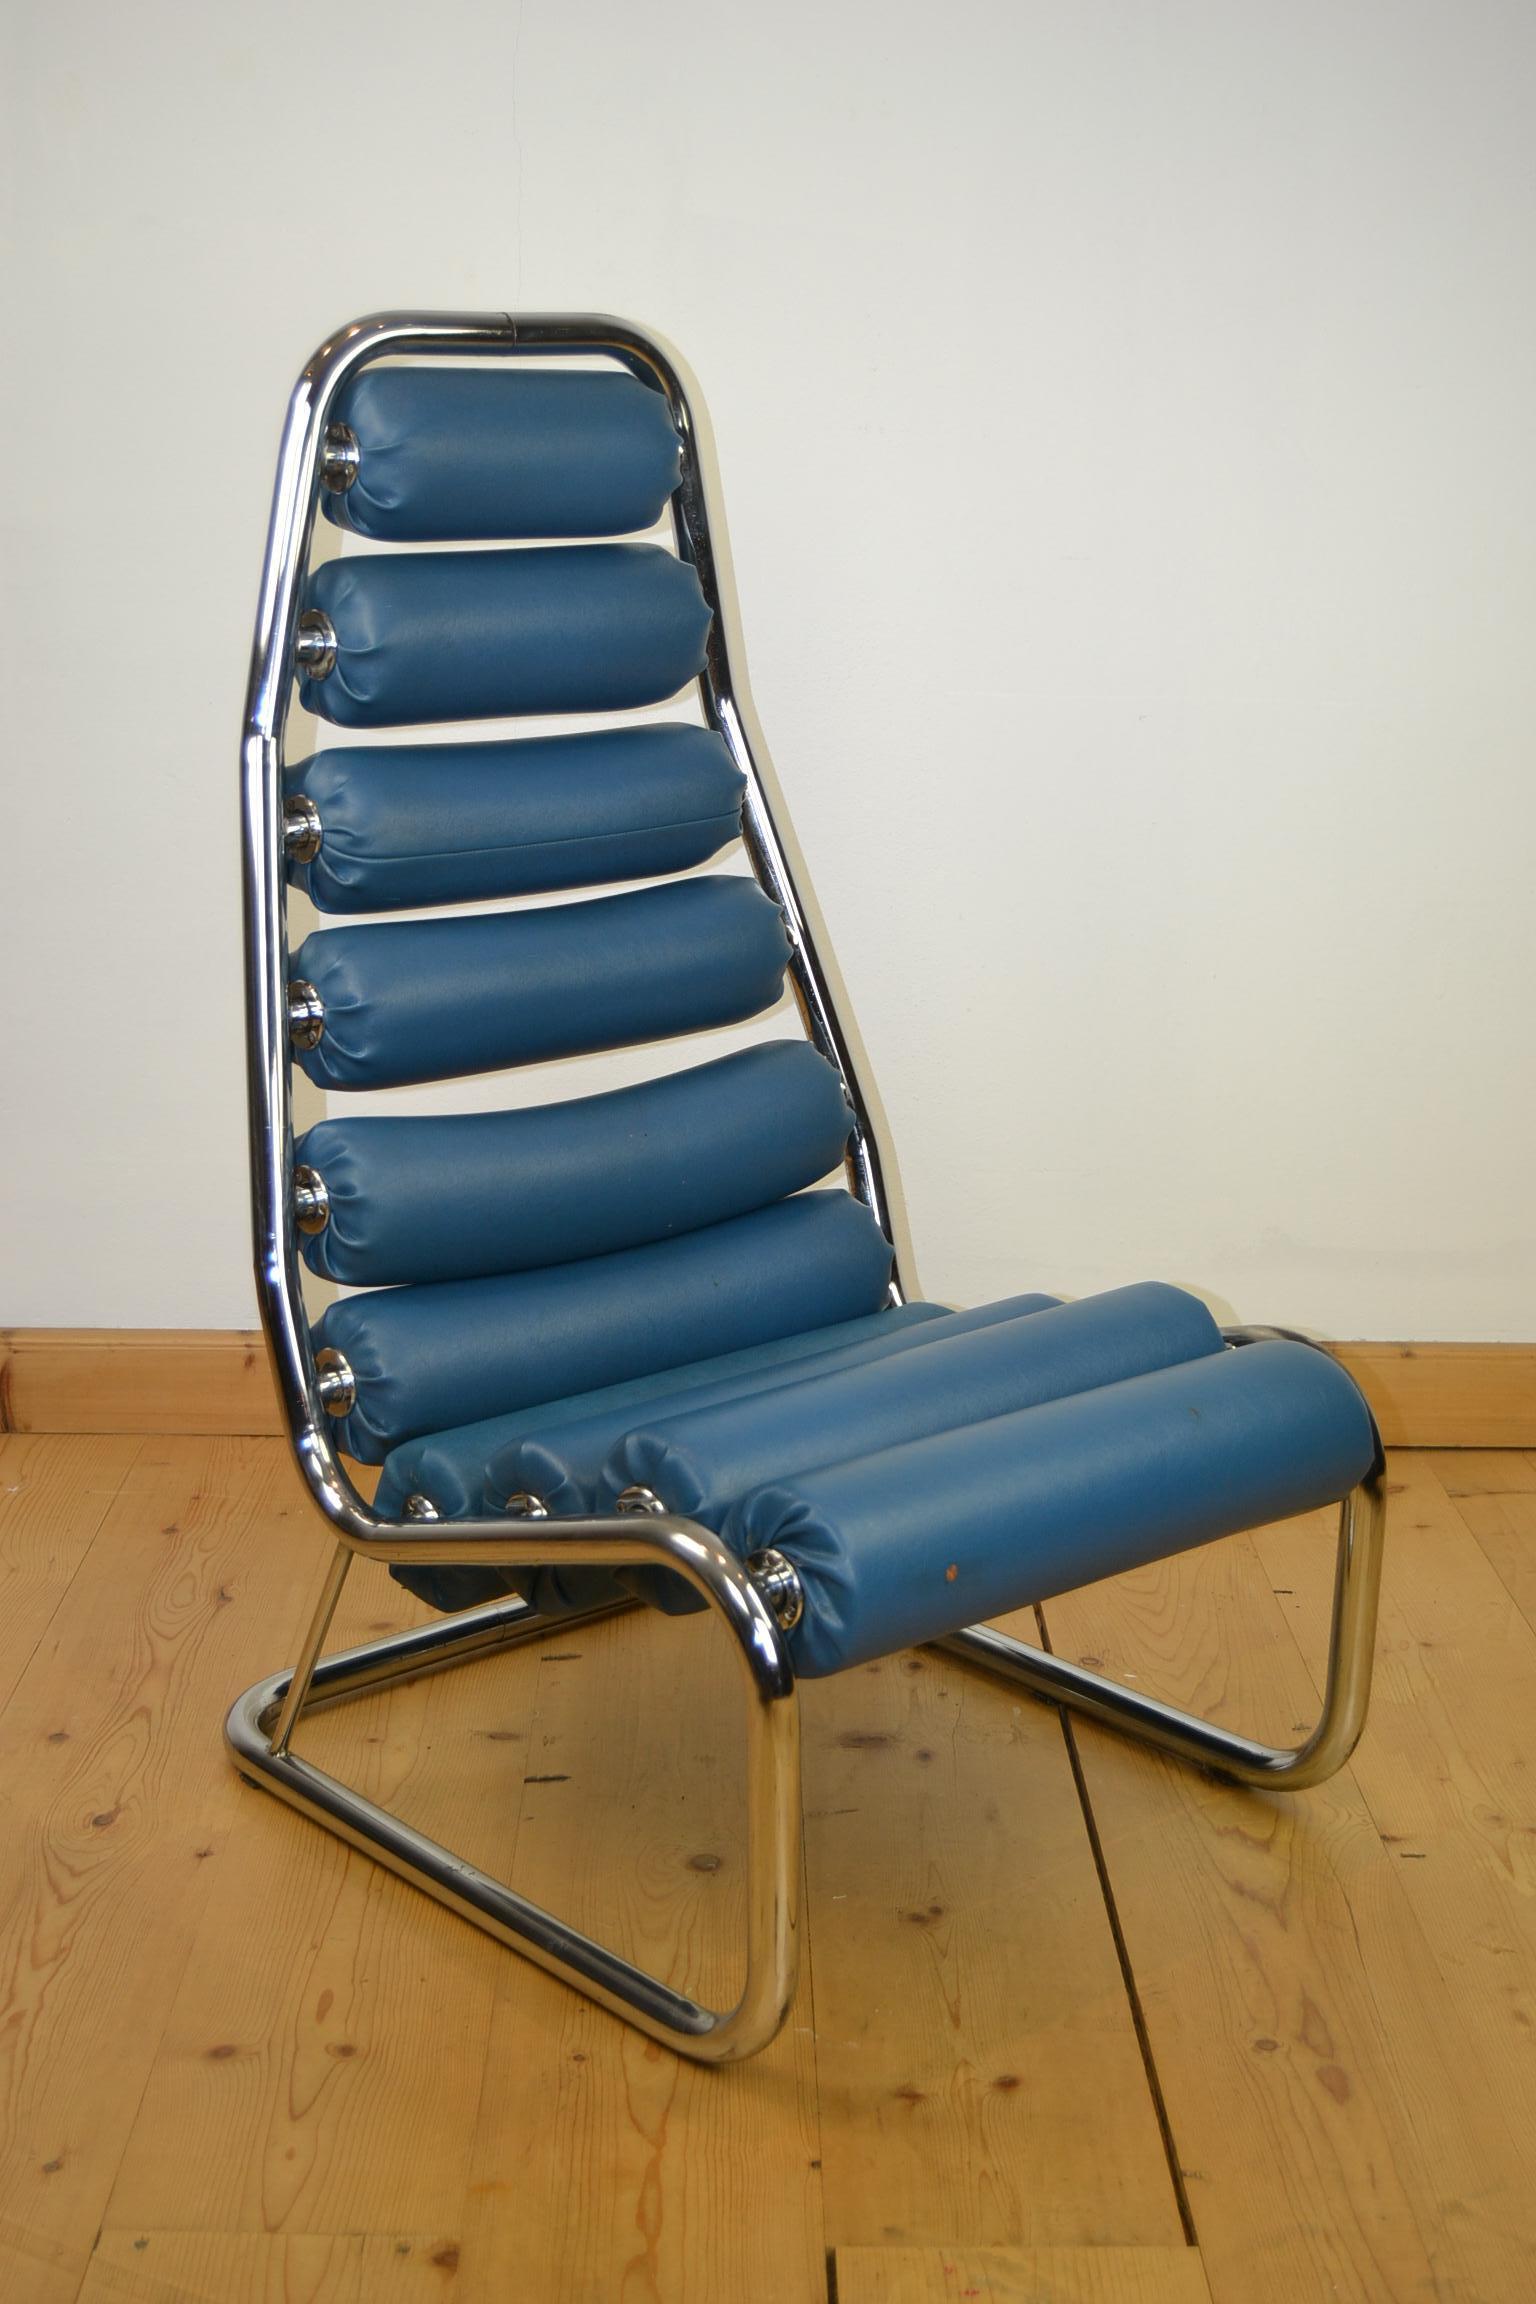 Blauer Clubsessel aus den 1970er Jahren. 
Ein auffälliger Stuhl aus einem verchromten Gestell mit 10 blauen Kunstlederrollen, die sich drehen lassen. Diese Rollen bringen Sie auch im Fitnessstudio zum Nachdenken. 

Dieser Sessel mit Rollen wurde